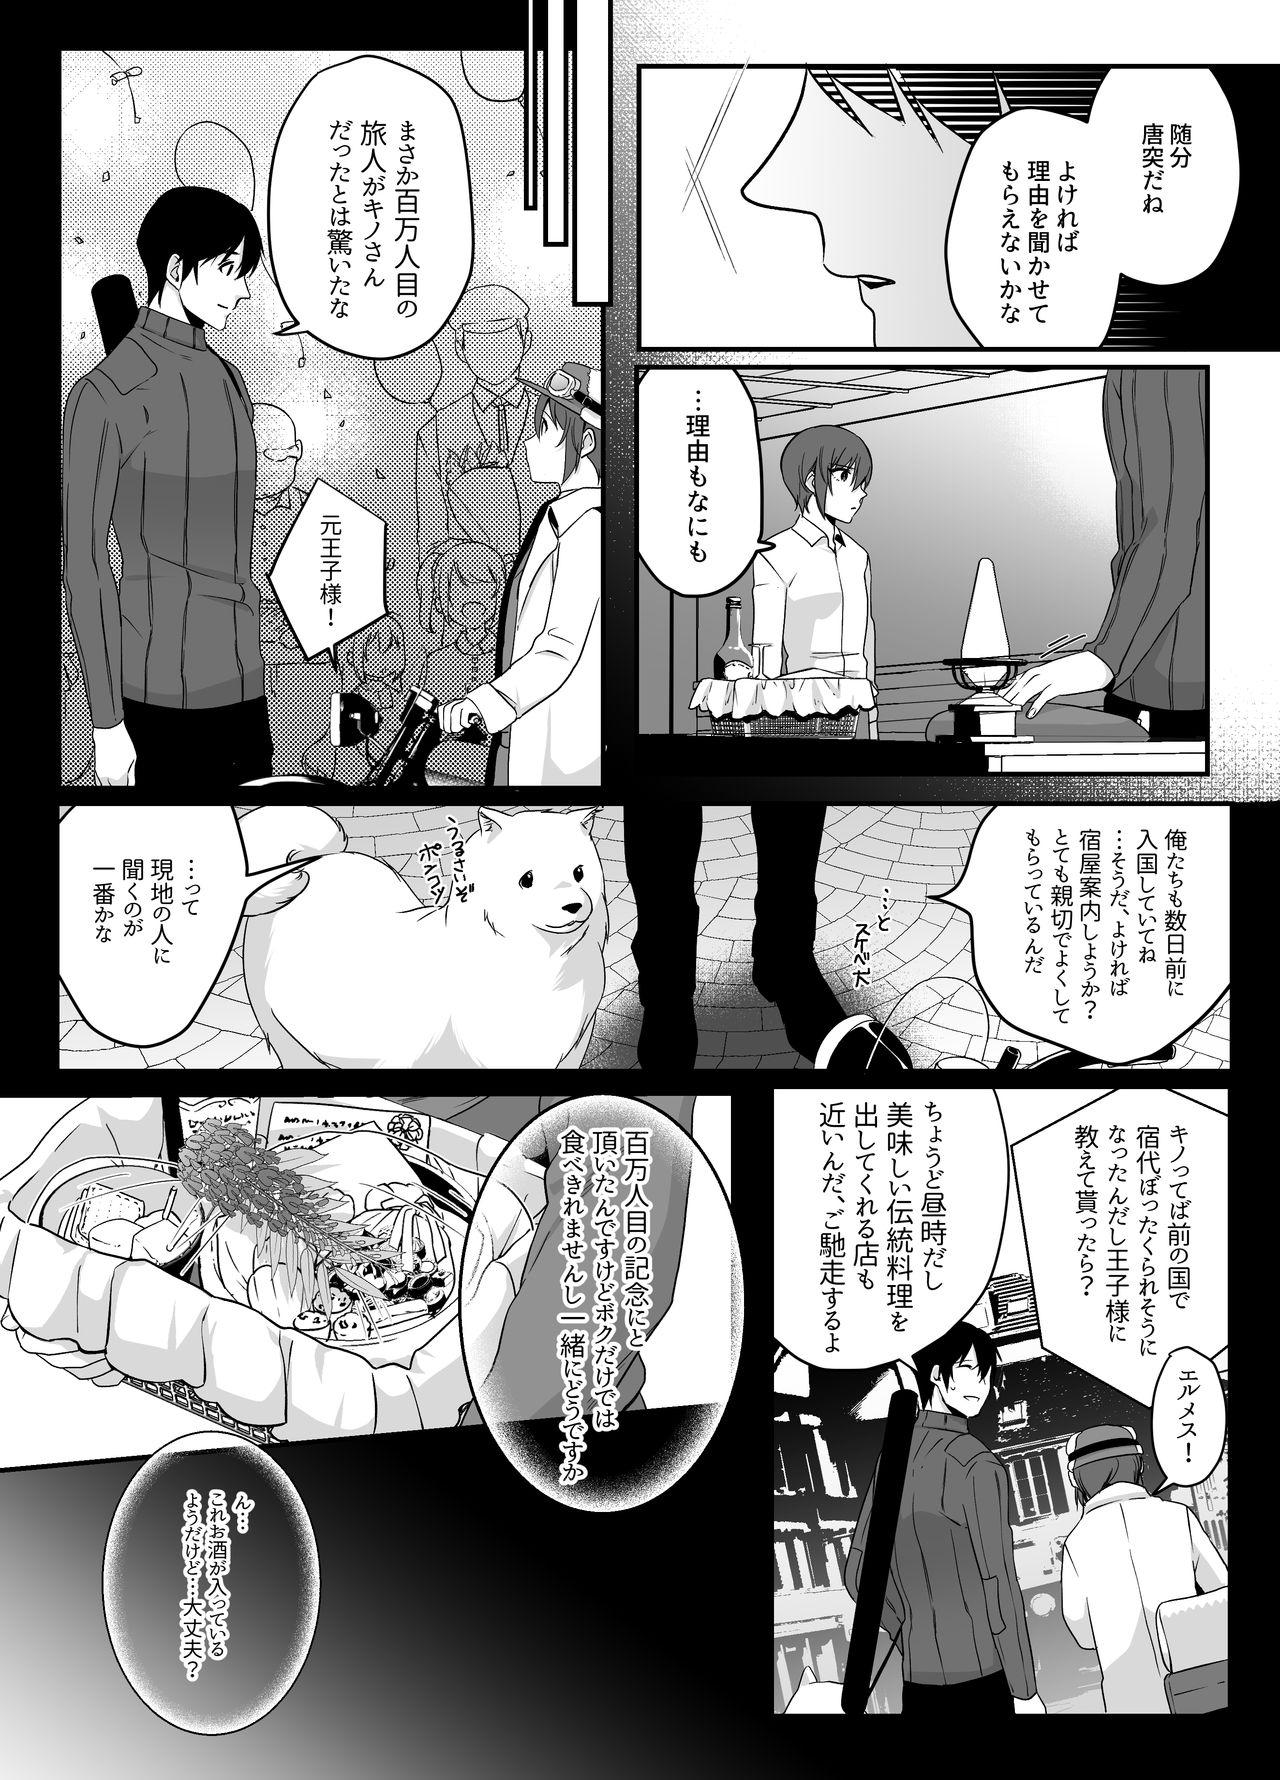 Off Shion - Kino no tabi Naughty - Page 7